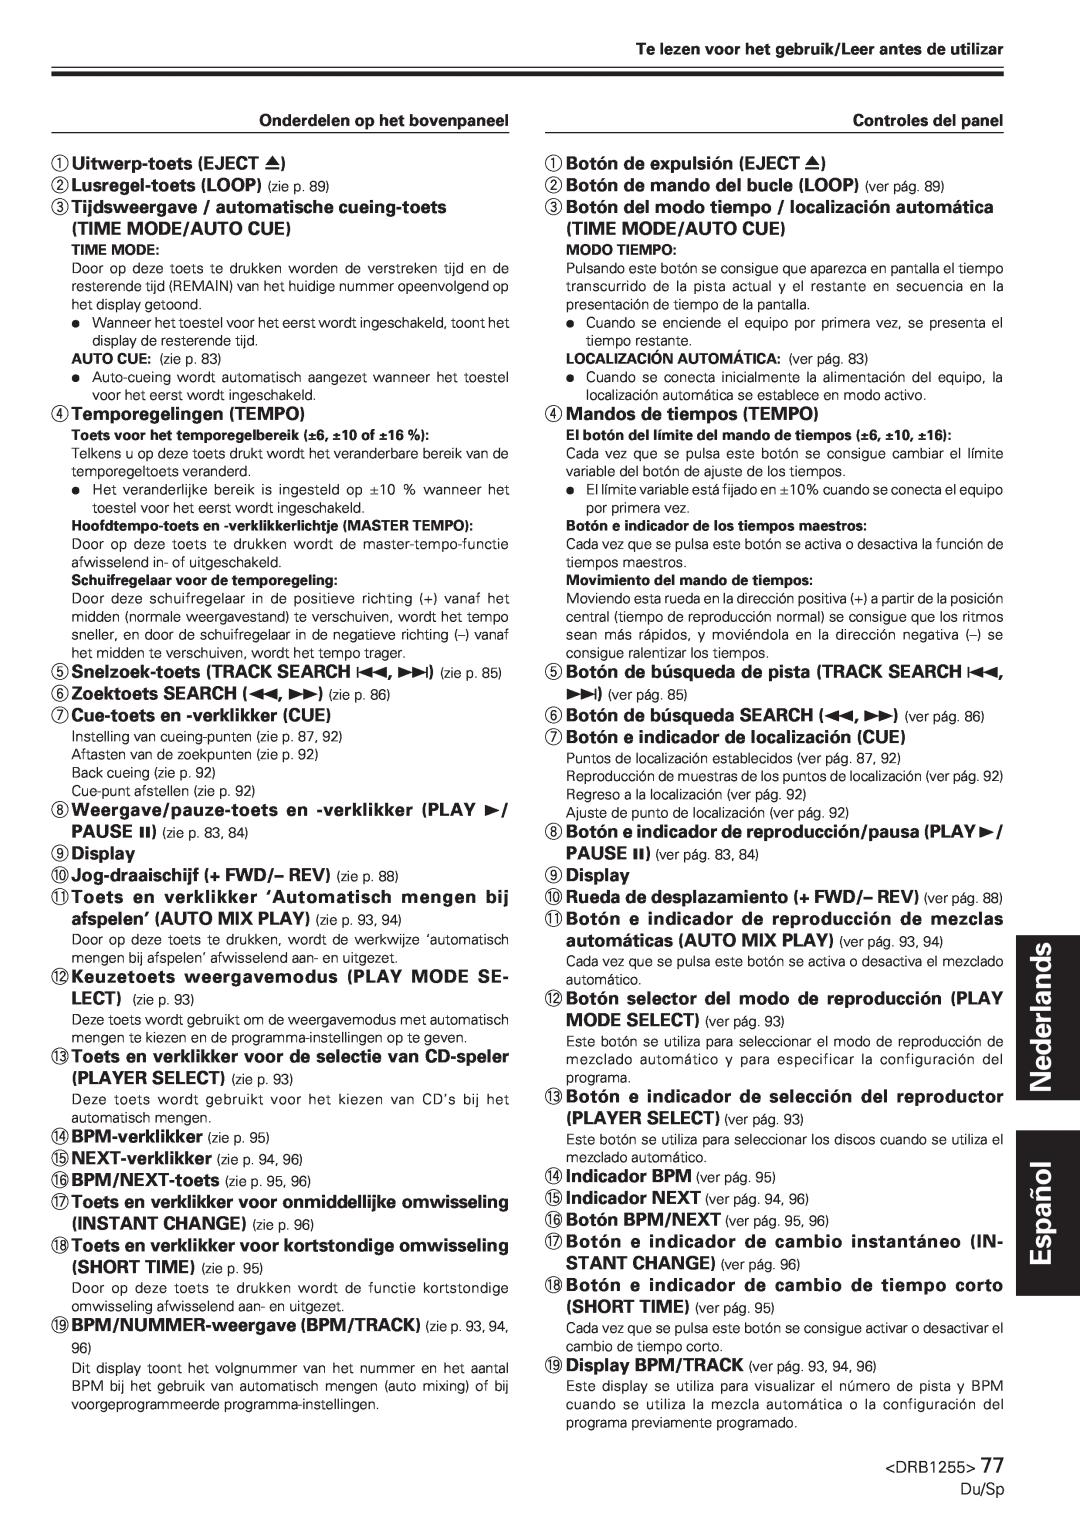 Pioneer CMX-5000 manual Español Nederlands, 1Uitwerp-toetsEJECT 2Lusregel-toetsLOOP zie p 